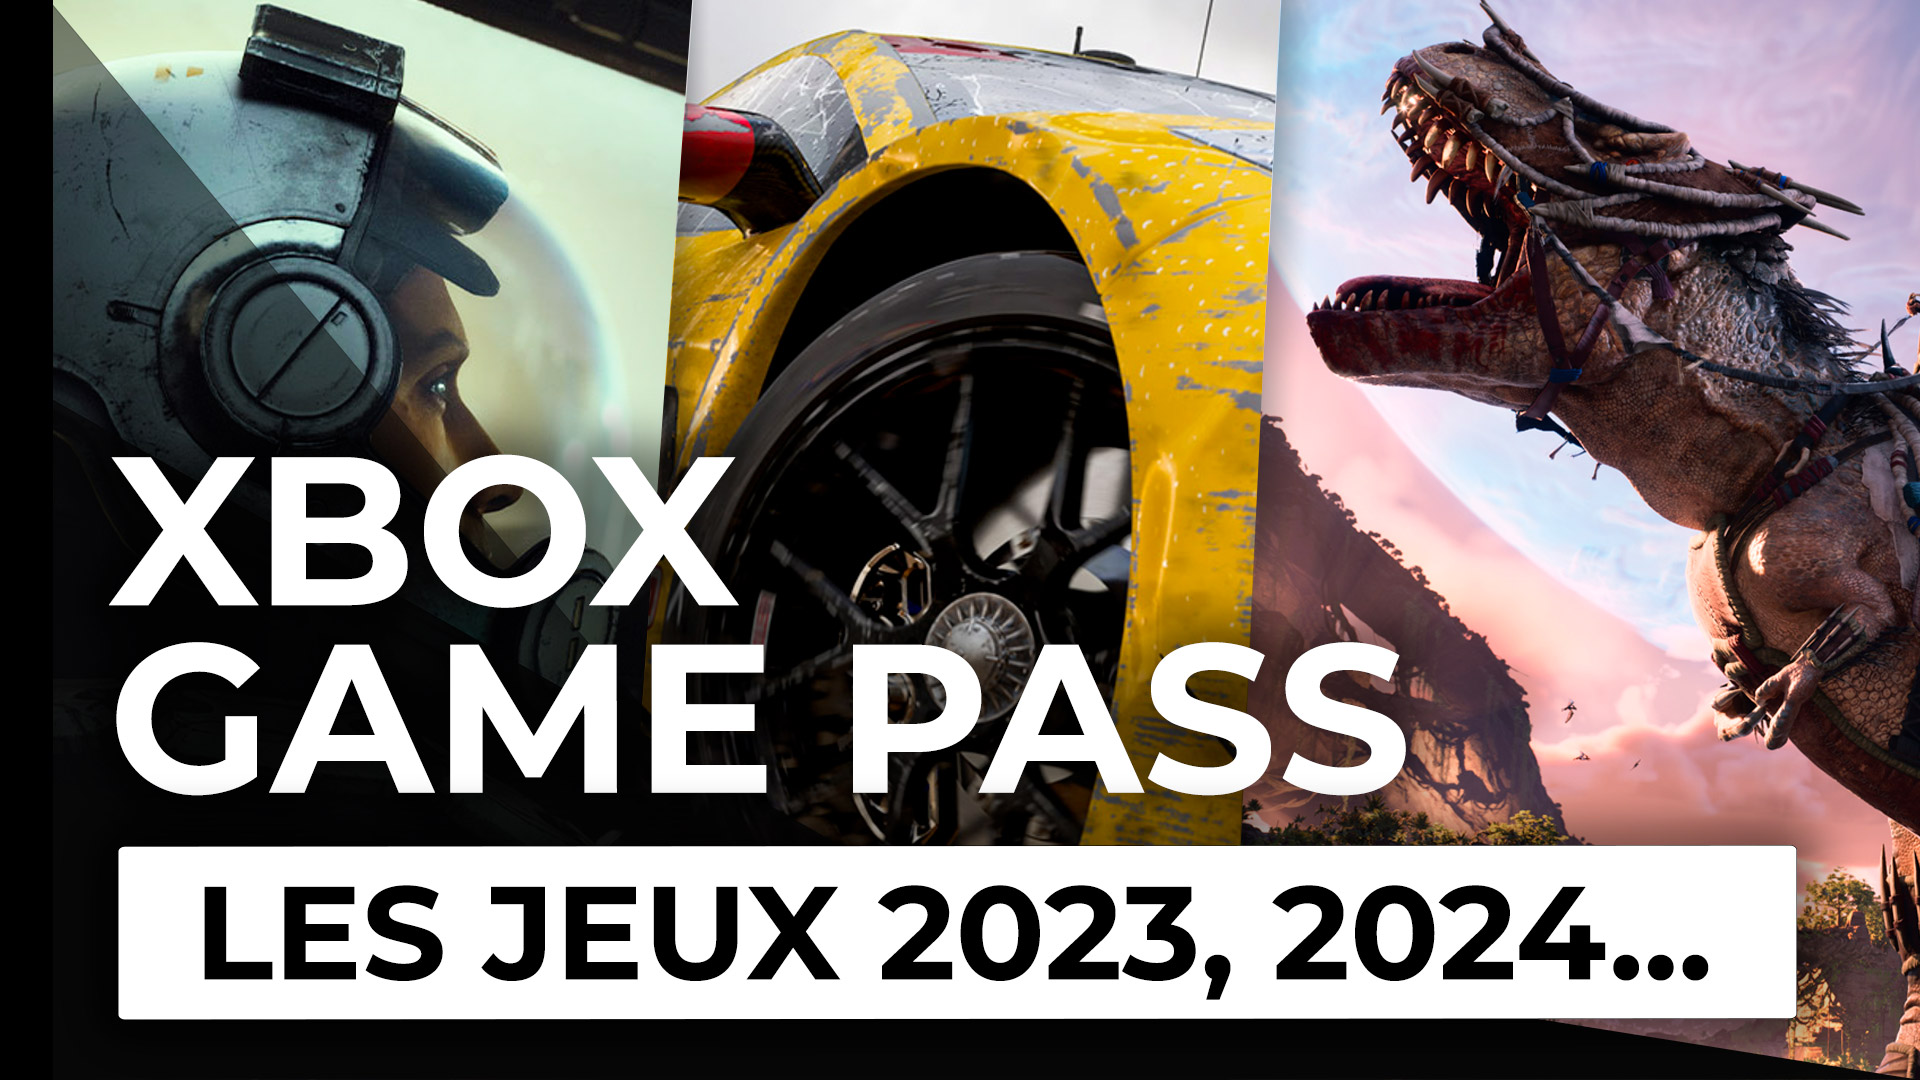 Xbox Game Pass 2023 i 2024: Obejmuje wszystkie poniższe gry!  |  Xbox One